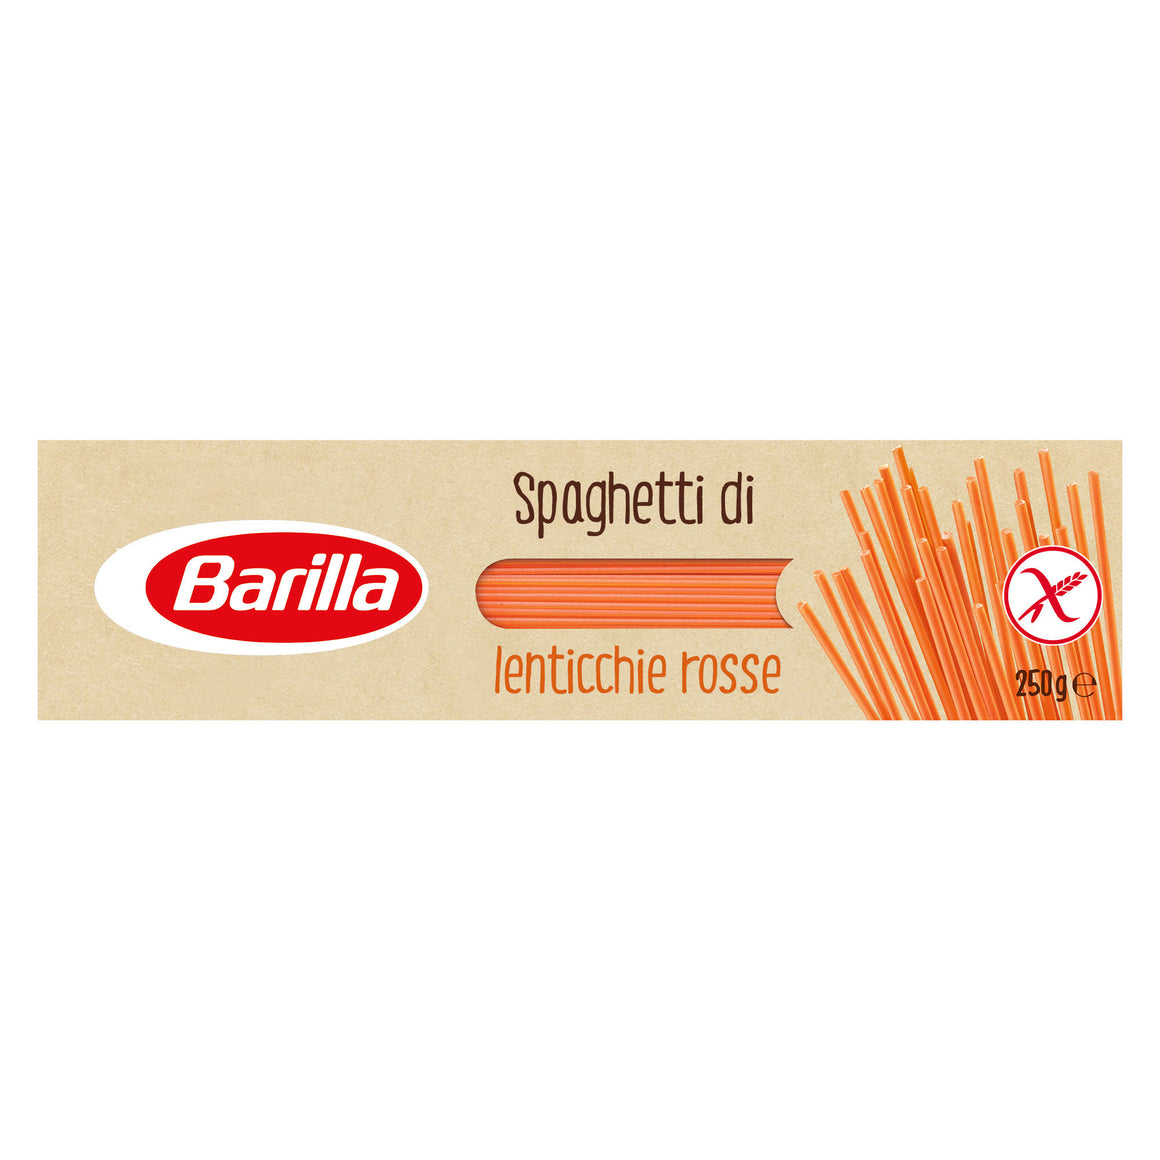 Barilla Pasta Spaghetti Red Lentil Gluten Free 250g